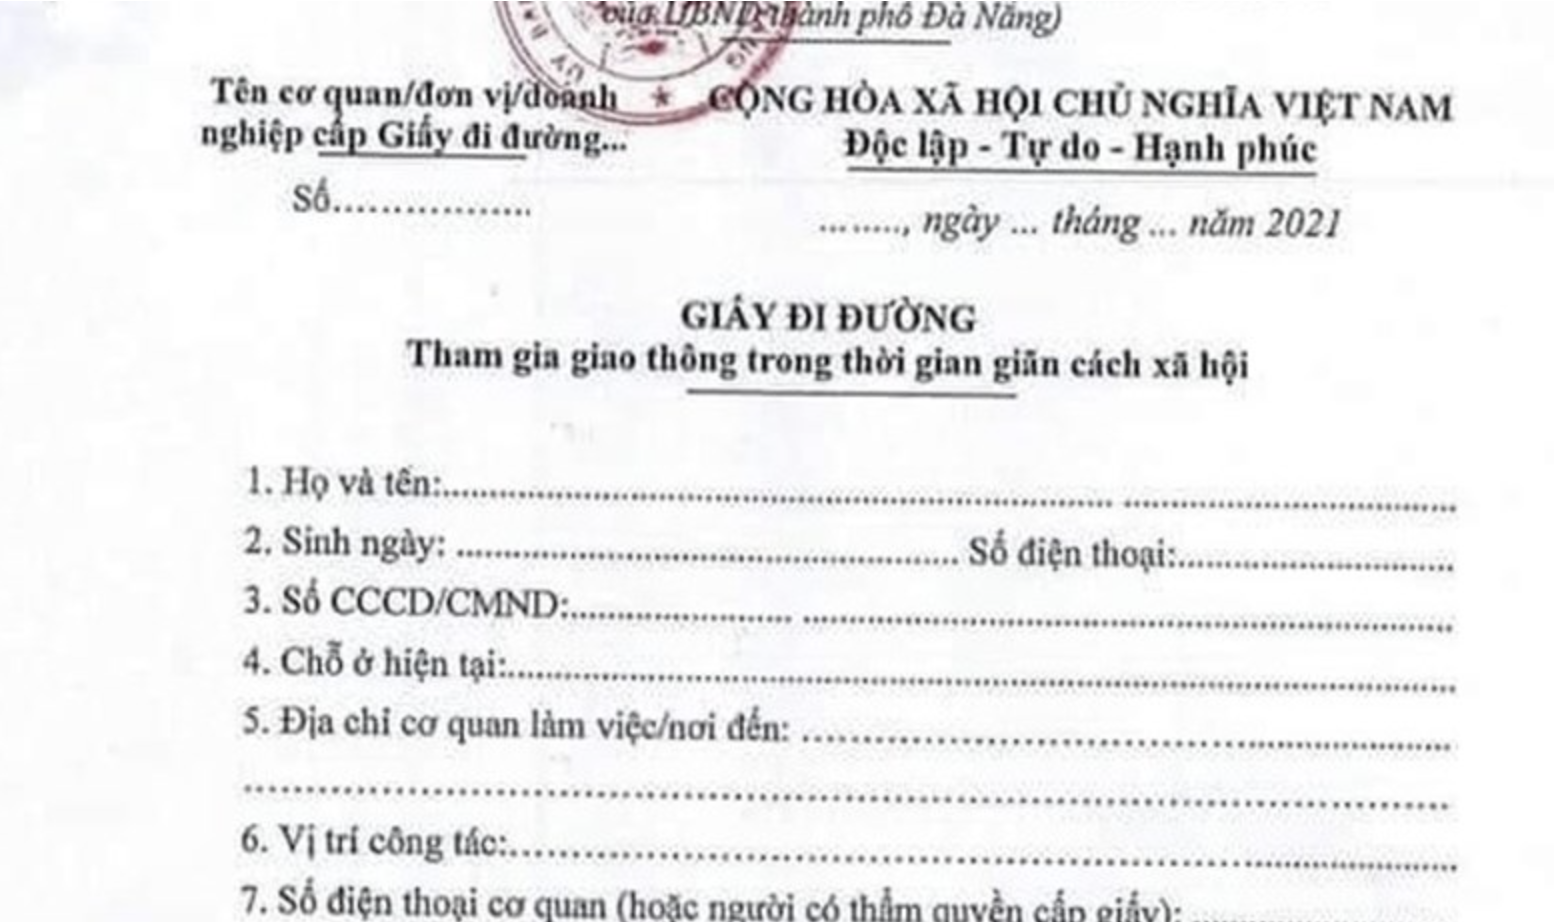 Căn cước công dân: Hãy xem hình ảnh liên quan đến Căn cước công dân để biết thêm về giấy tờ quan trọng này, giúp bạn có thể tham gia các hoạt động tại Việt Nam một cách dễ dàng và thuận tiện hơn.